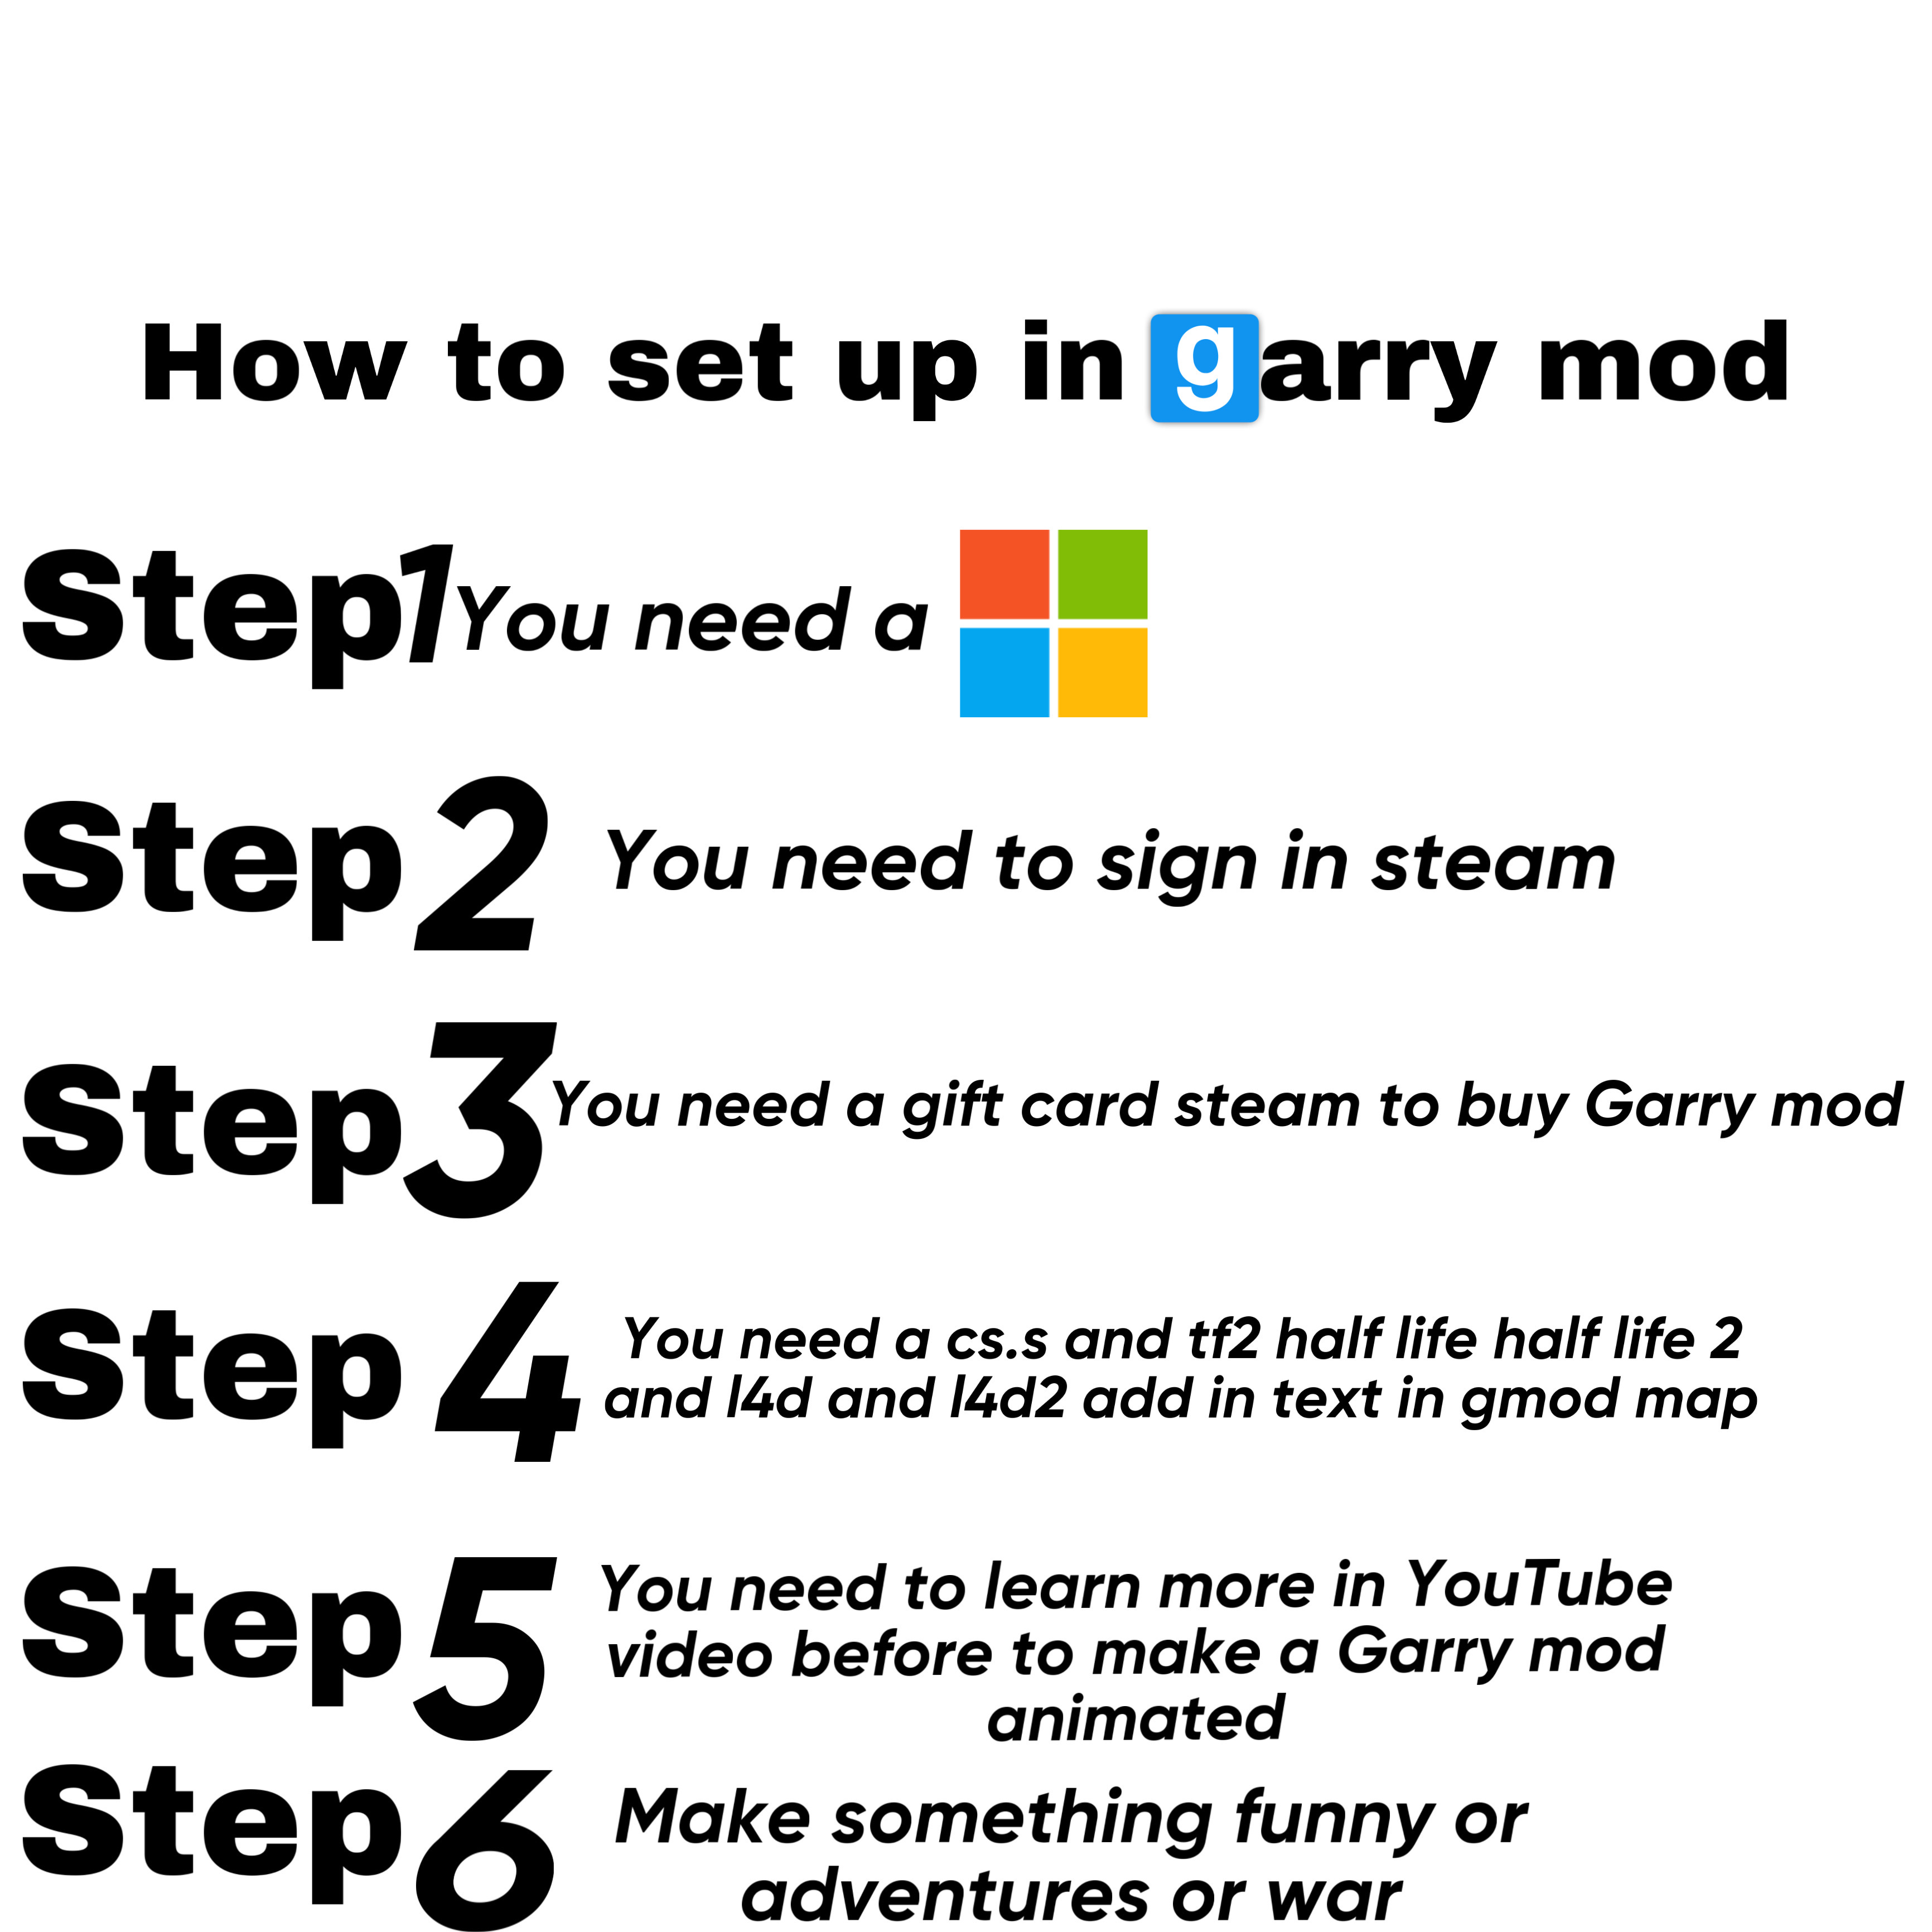 Garry's Mod Font